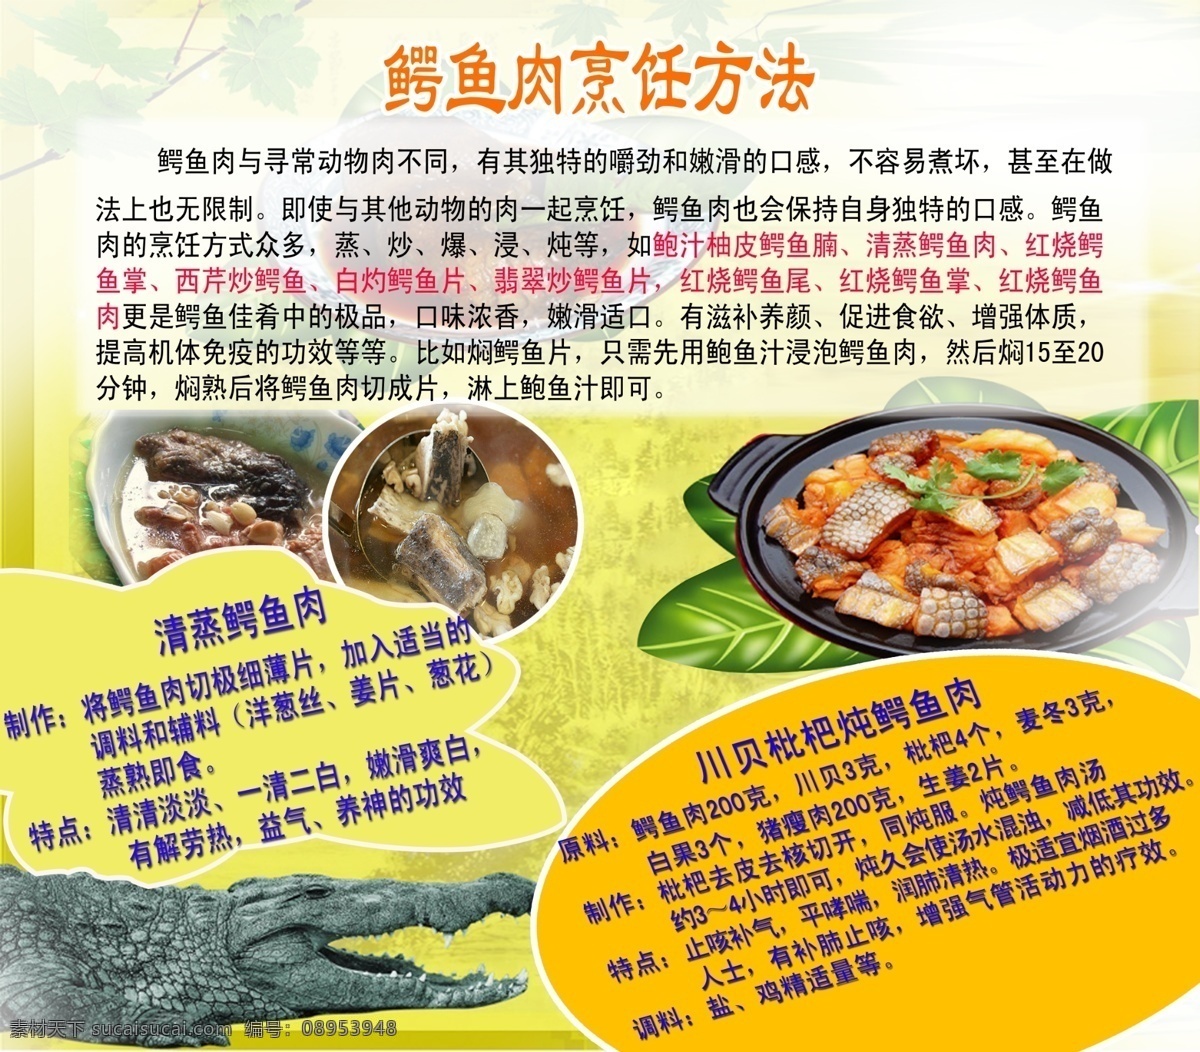 鳄鱼 肉 烹饪 方法 锷鱼 熟食制作方 海报 菜单 菜单菜谱 广告设计模板 源文件